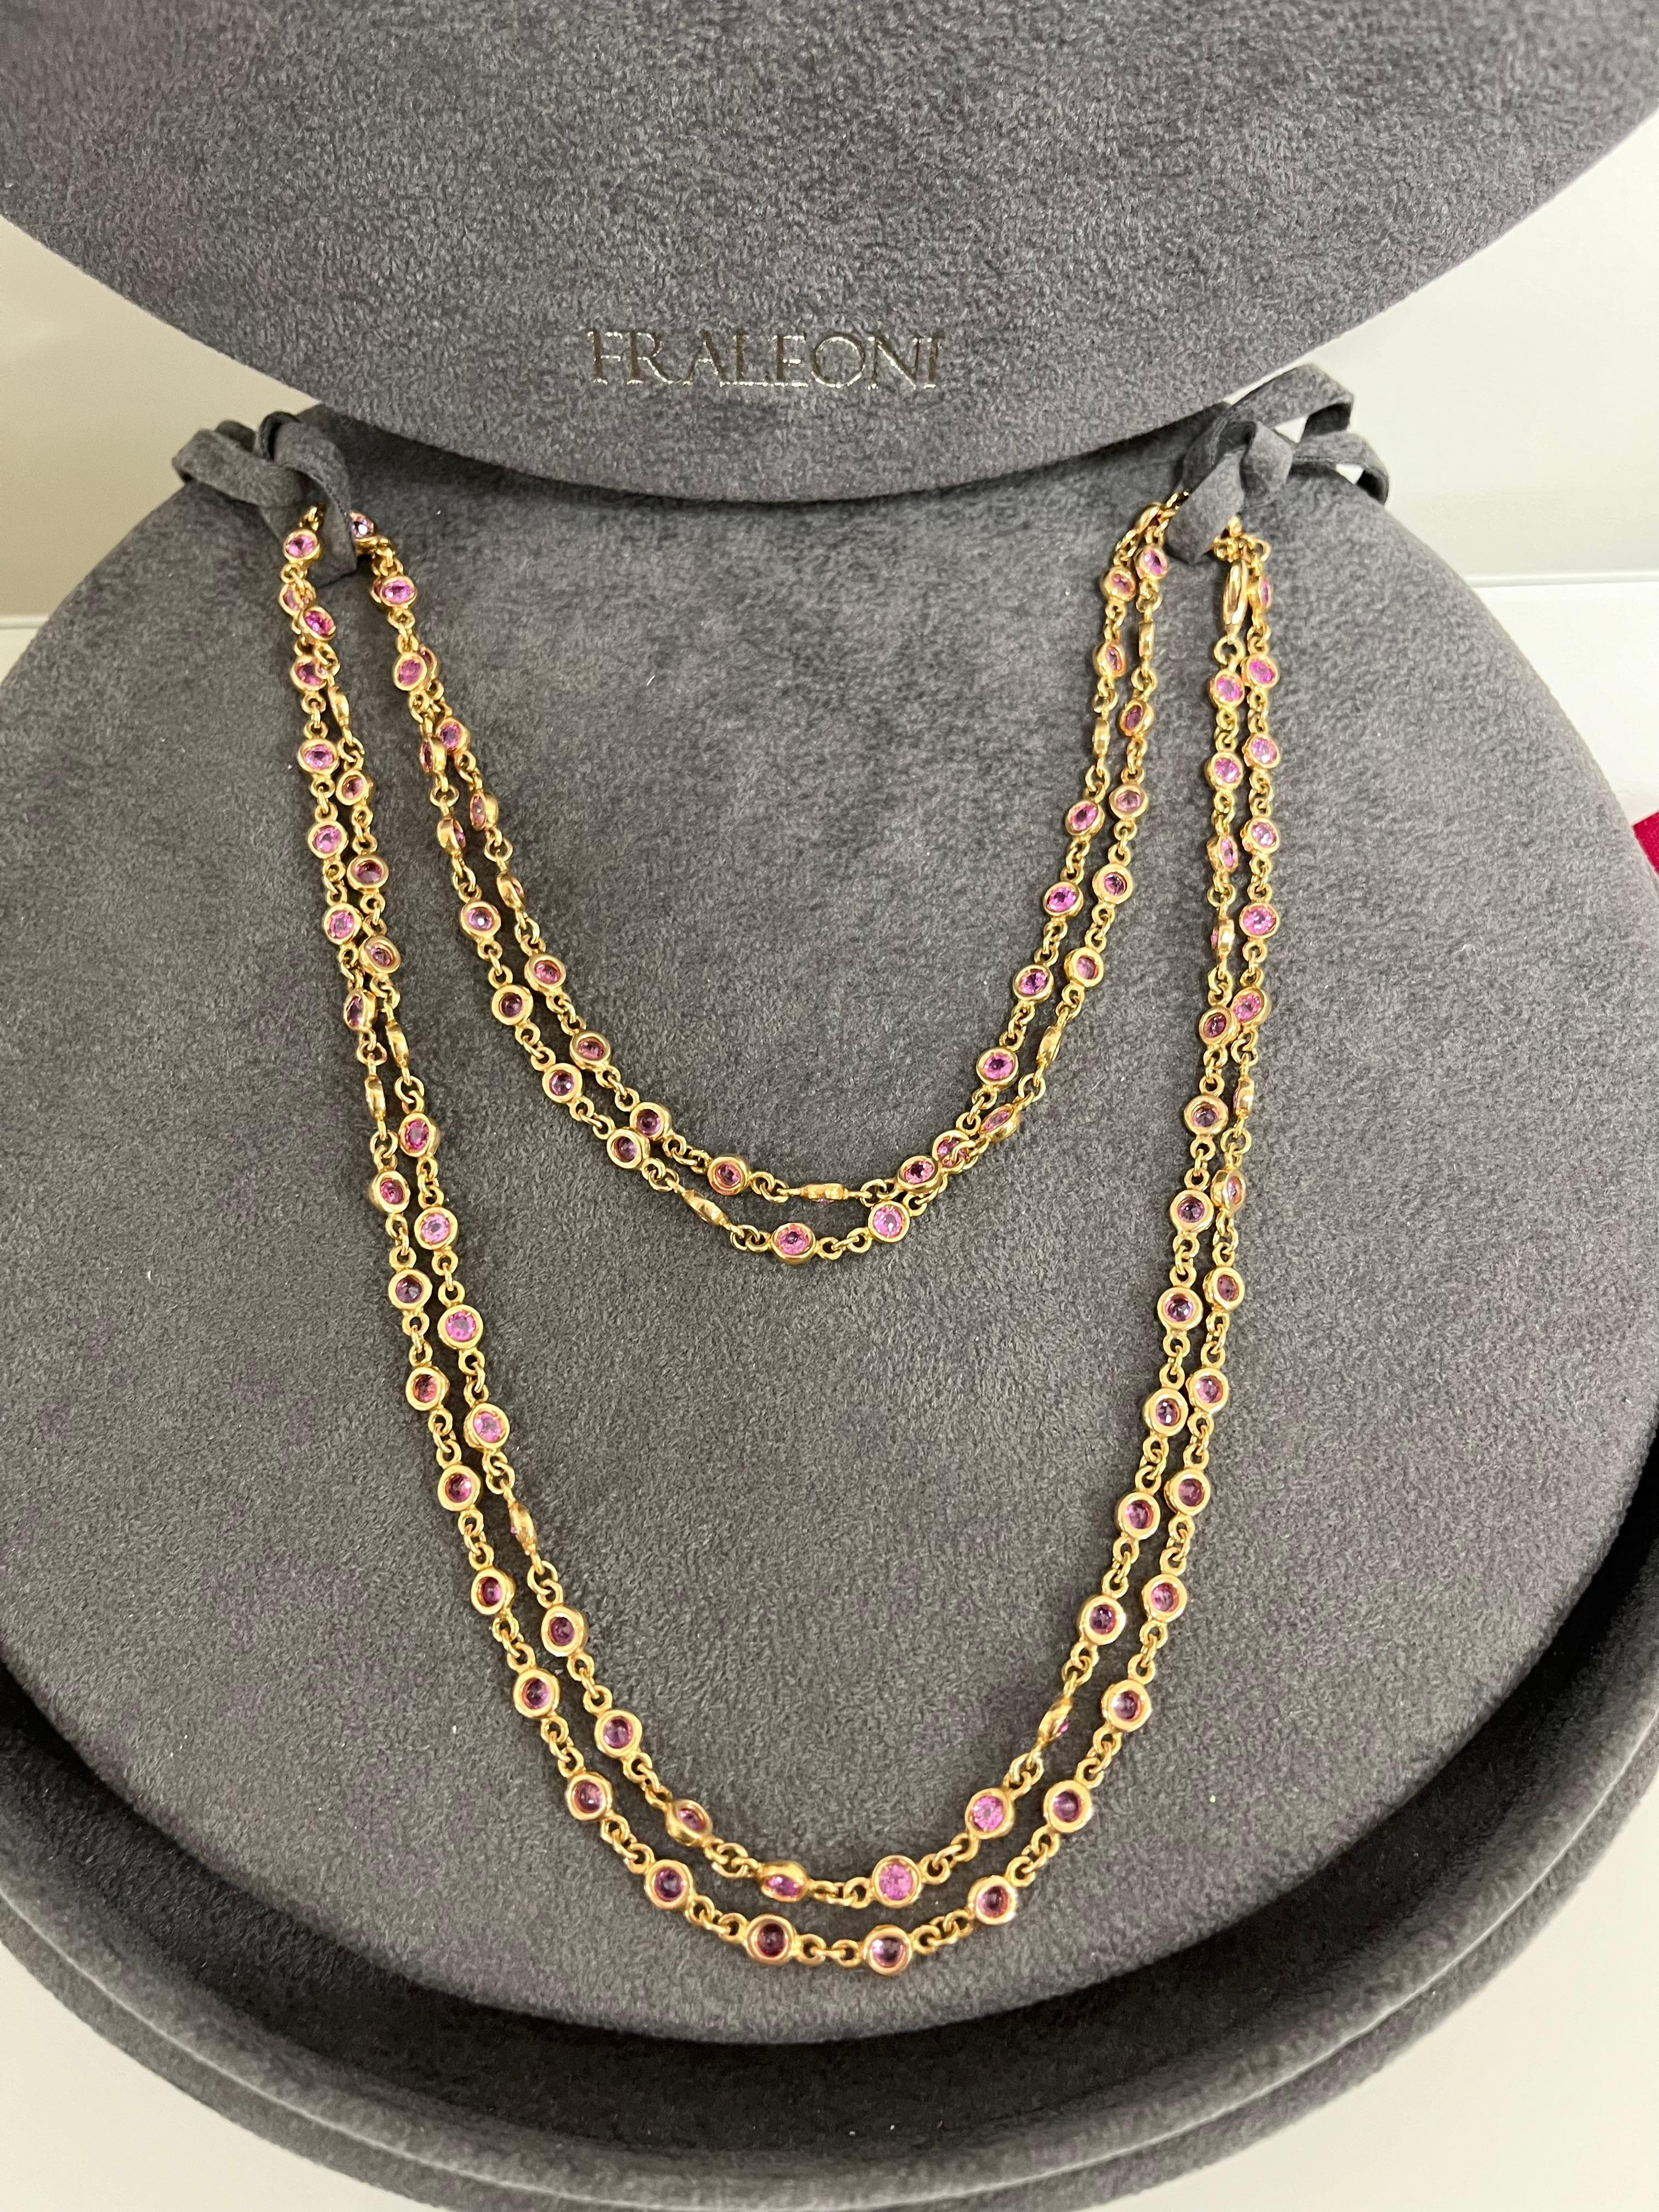 Fraleoni 18 Kt. Rose Gold Pink Sapphires Long Necklace For Sale 1